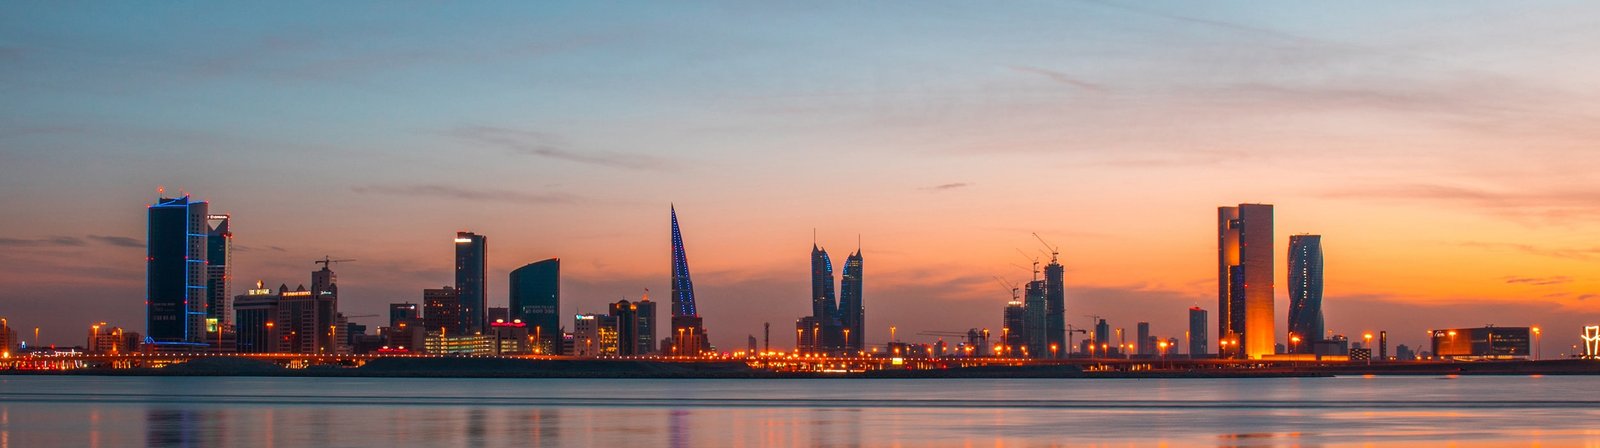 Coast Manama Bahrain